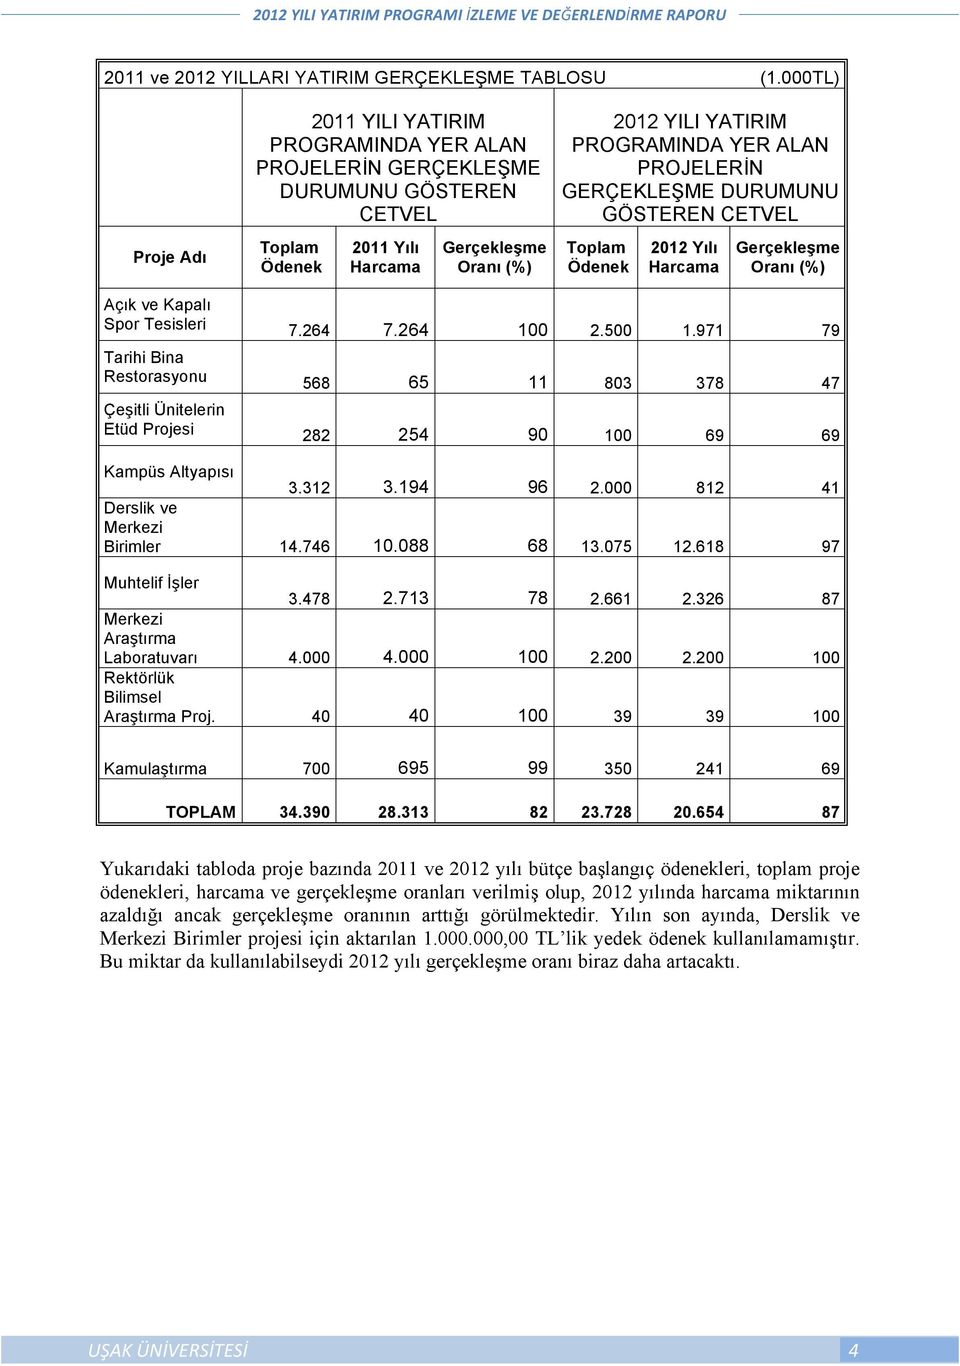 PROJELERİN GERÇEKLEŞME DURUMUNU GÖSTEREN CETVEL Ödenek 2012 Yılı Harcama Gerçekleşme Oranı (%) Açık ve Kapalı Spor Tesisleri 7.264 7.264 100 2.500 1.